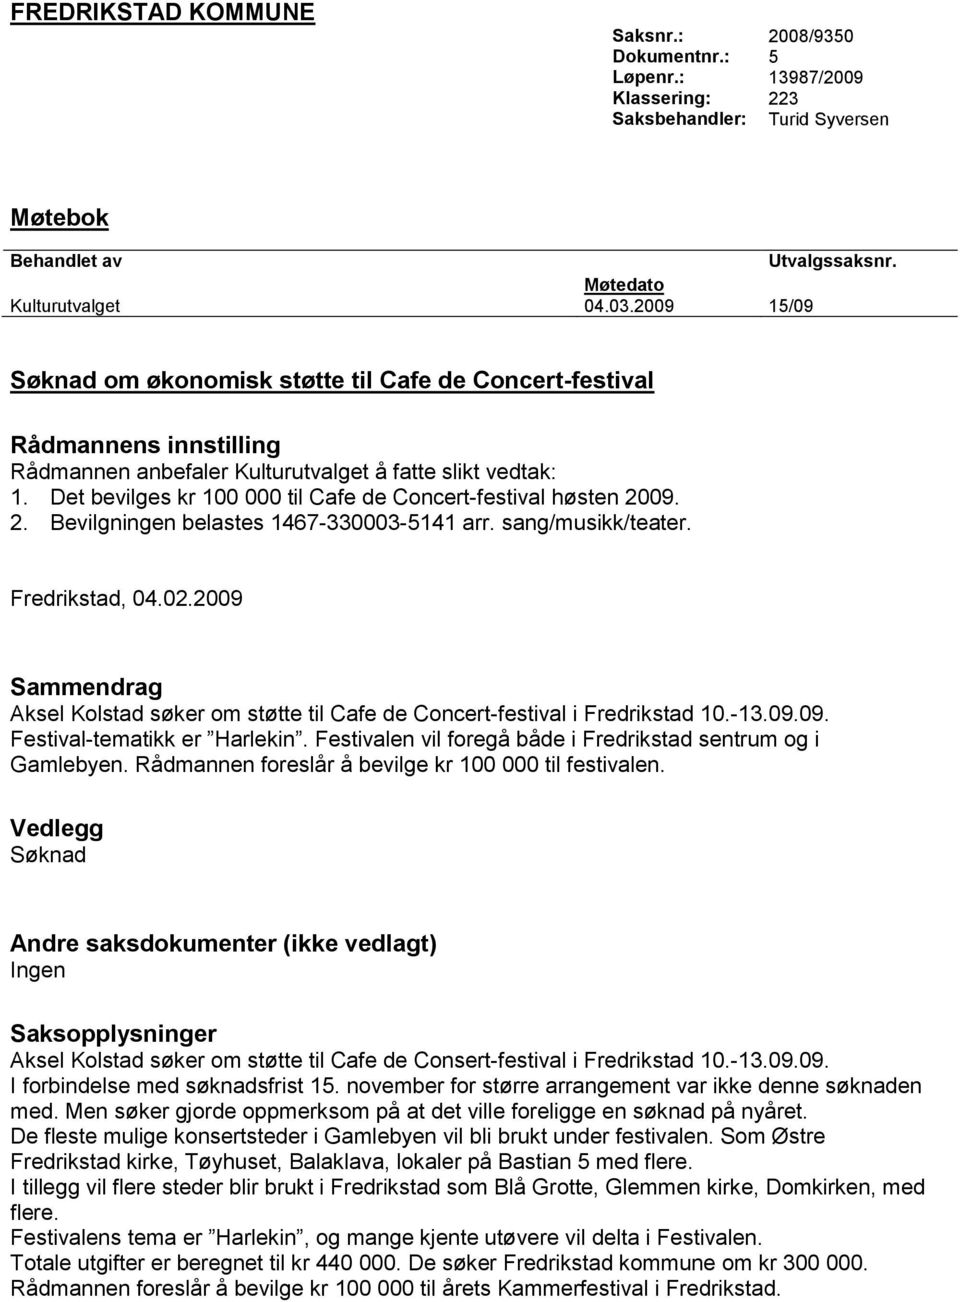 Det bevilges kr 100 000 til Cafe de Concert-festival høsten 2009. 2. Bevilgningen belastes 1467-330003-5141 arr. sang/musikk/teater. Fredrikstad, 04.02.